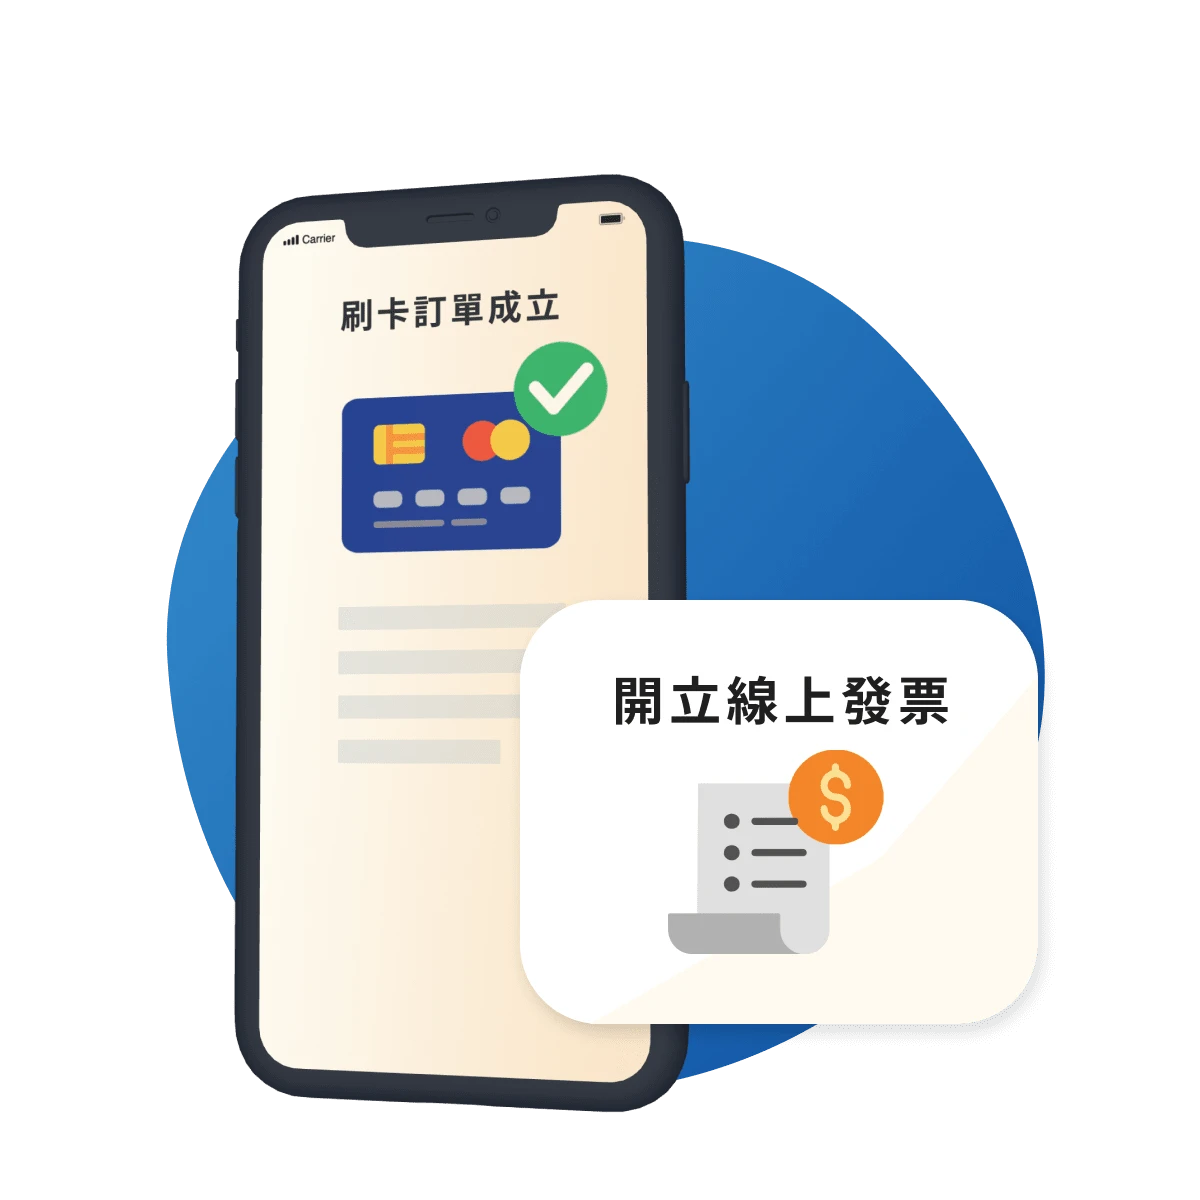 威許移動：品牌可透過線上支付提供便利的購物體驗，並於信用卡支付後，線上開立發票給消費者。By WishMobile